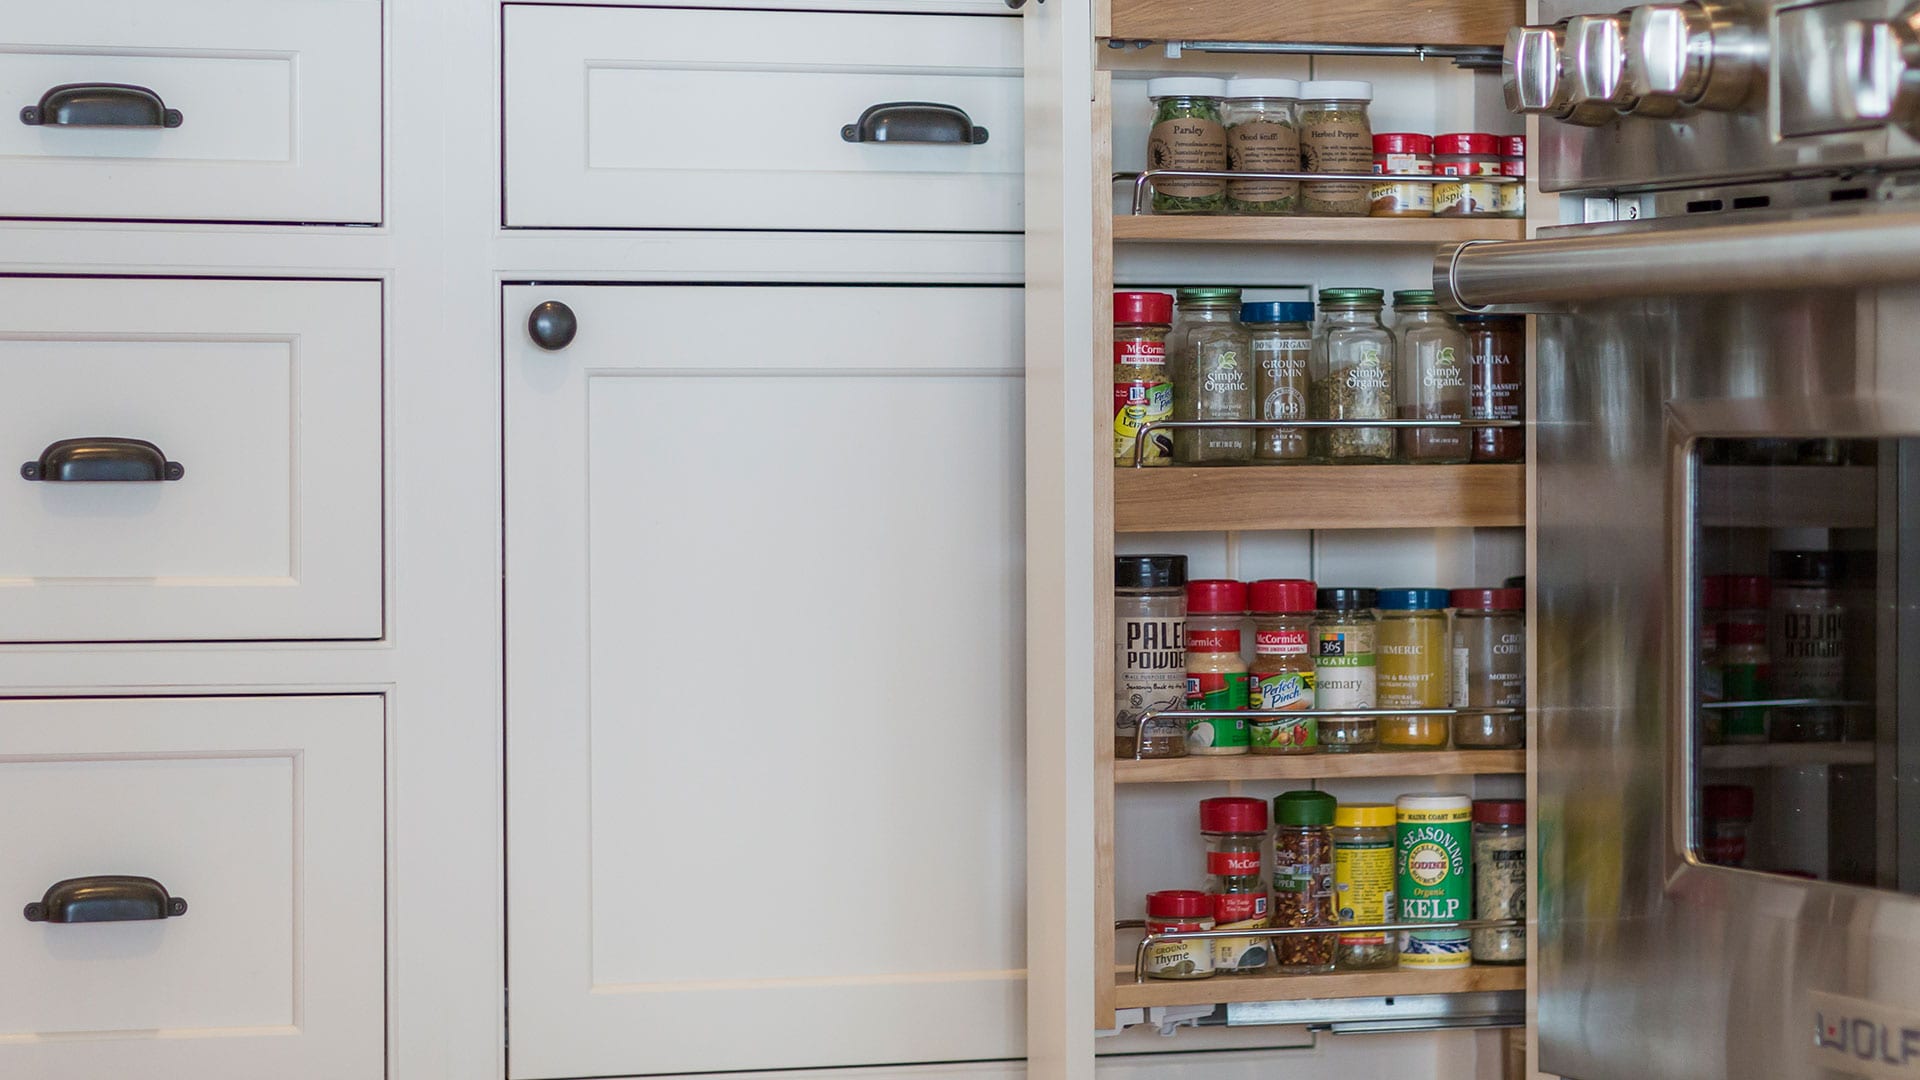 kitchen cupboard storage ideas